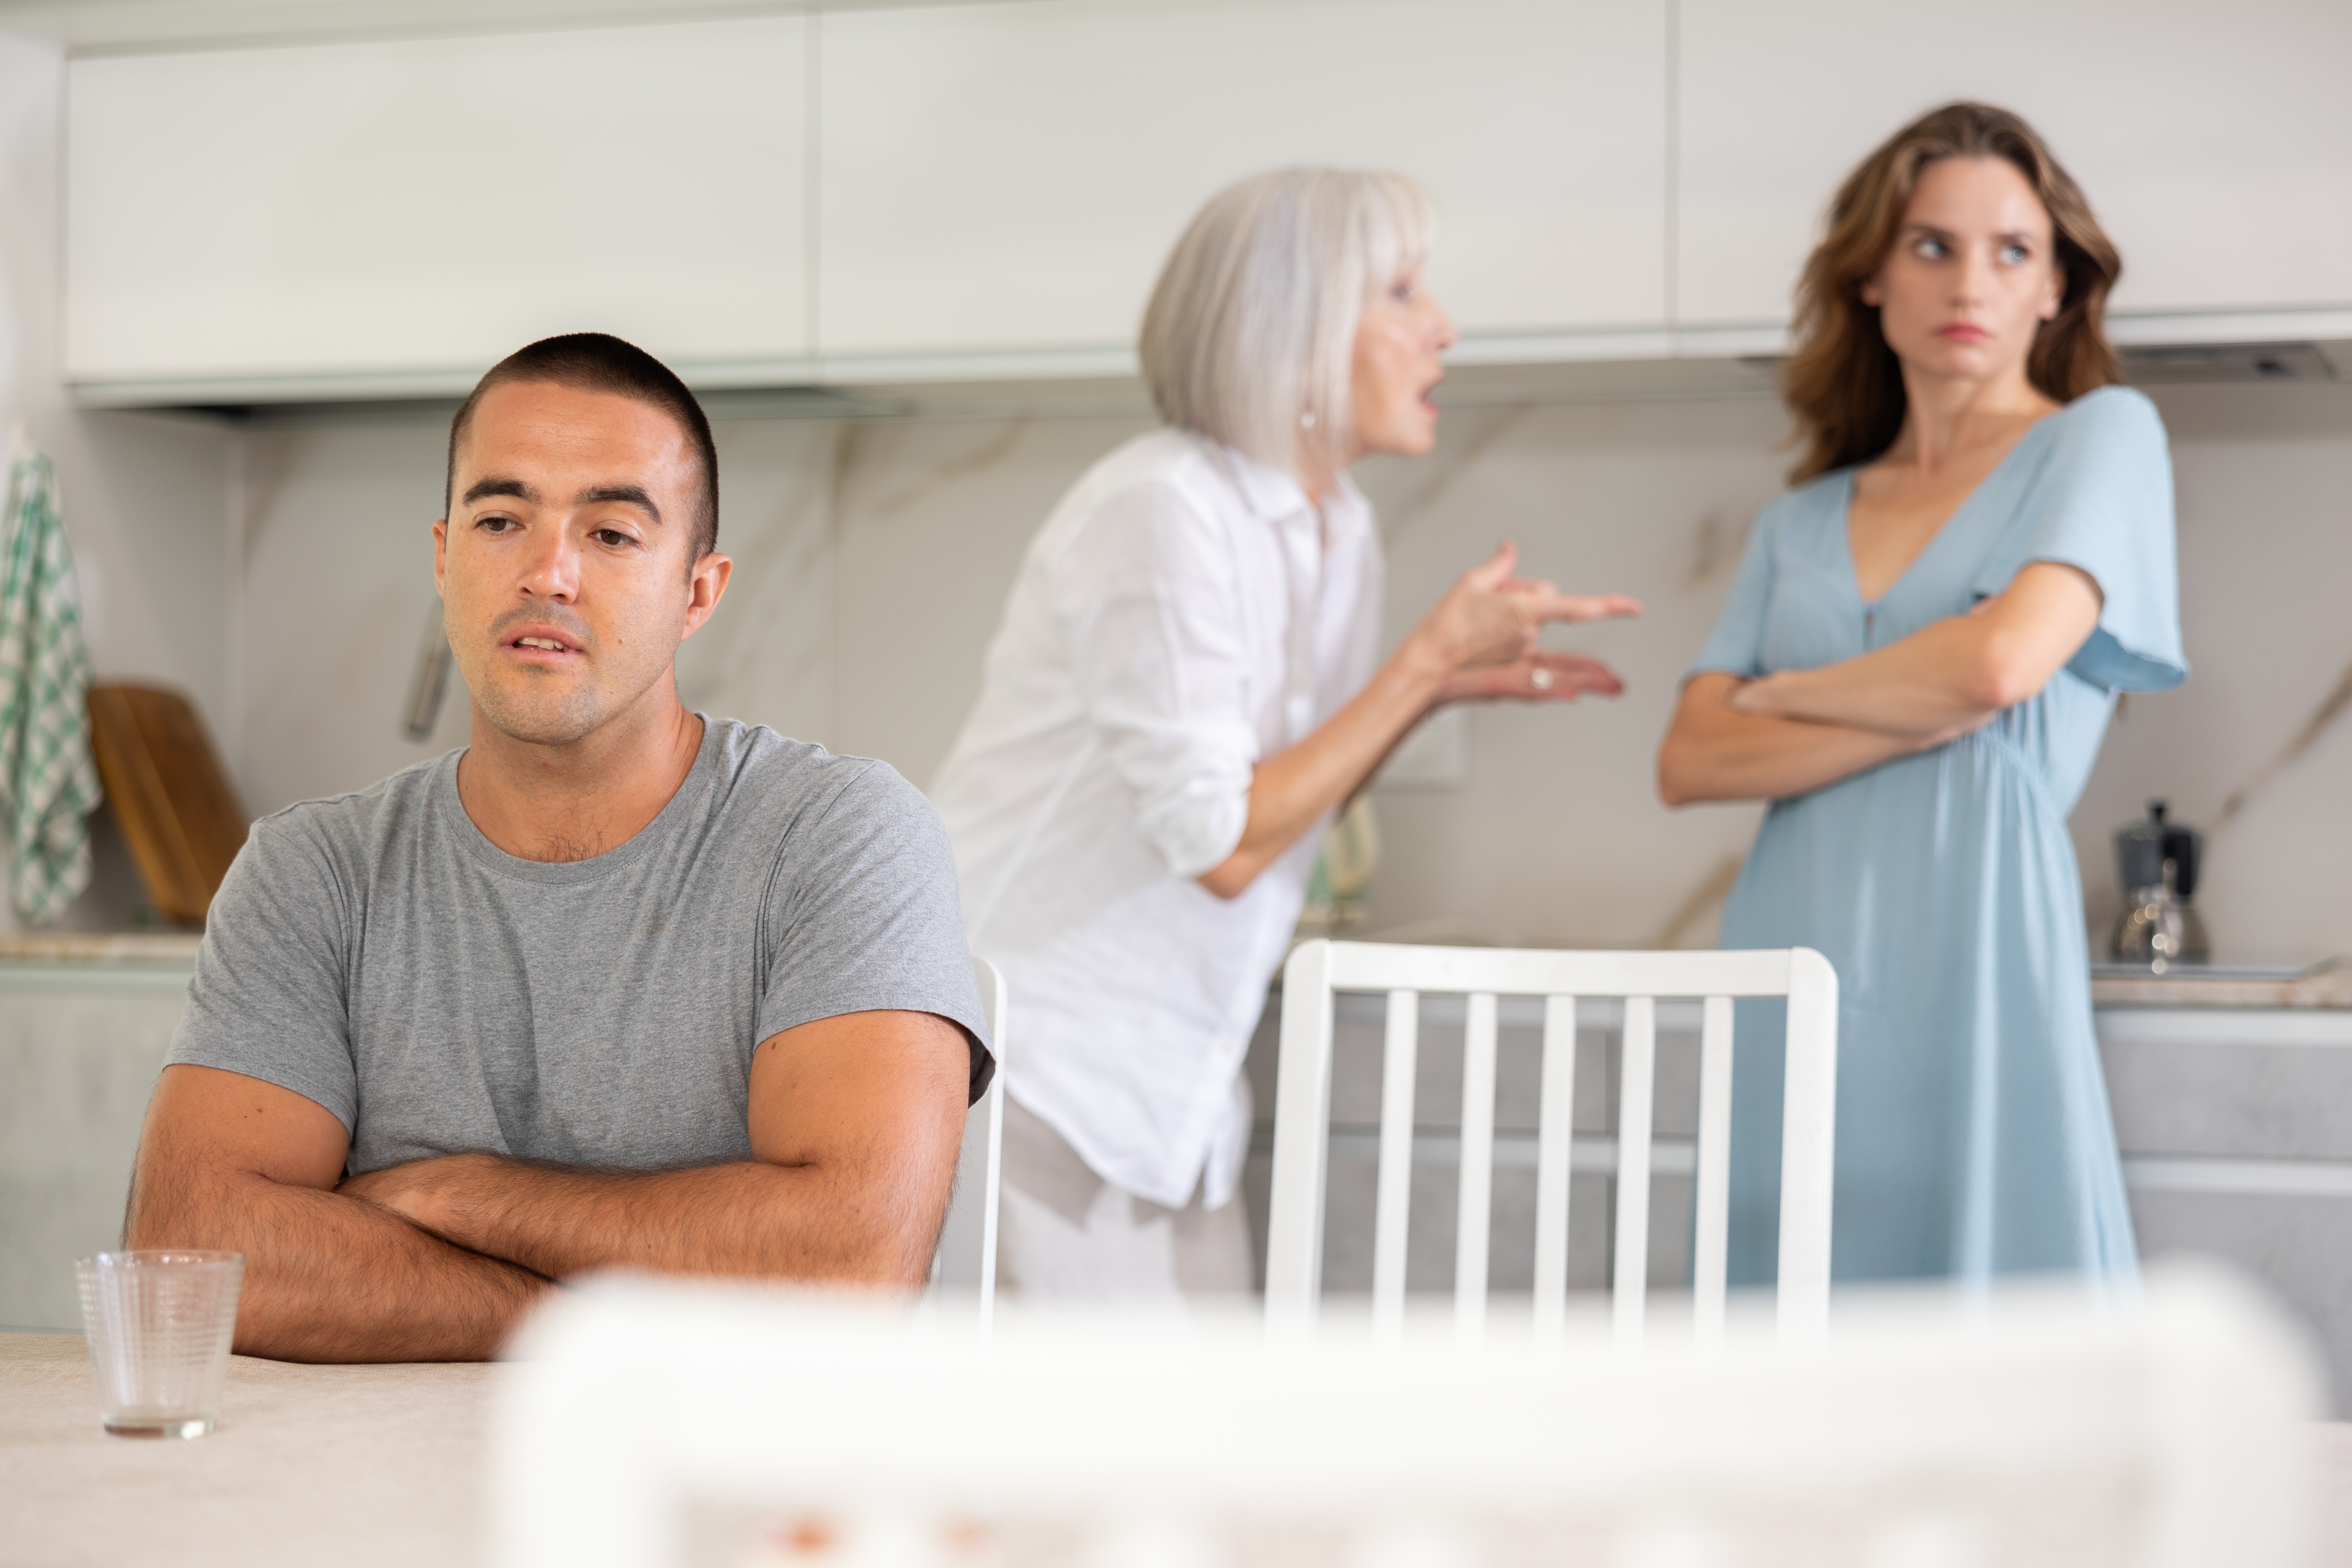 Eine ältere Frau streitet sich mit einer jüngeren Frau, die wegschaut, während ein anderer Mann vor ihnen sitzt | Quelle: Shutterstock